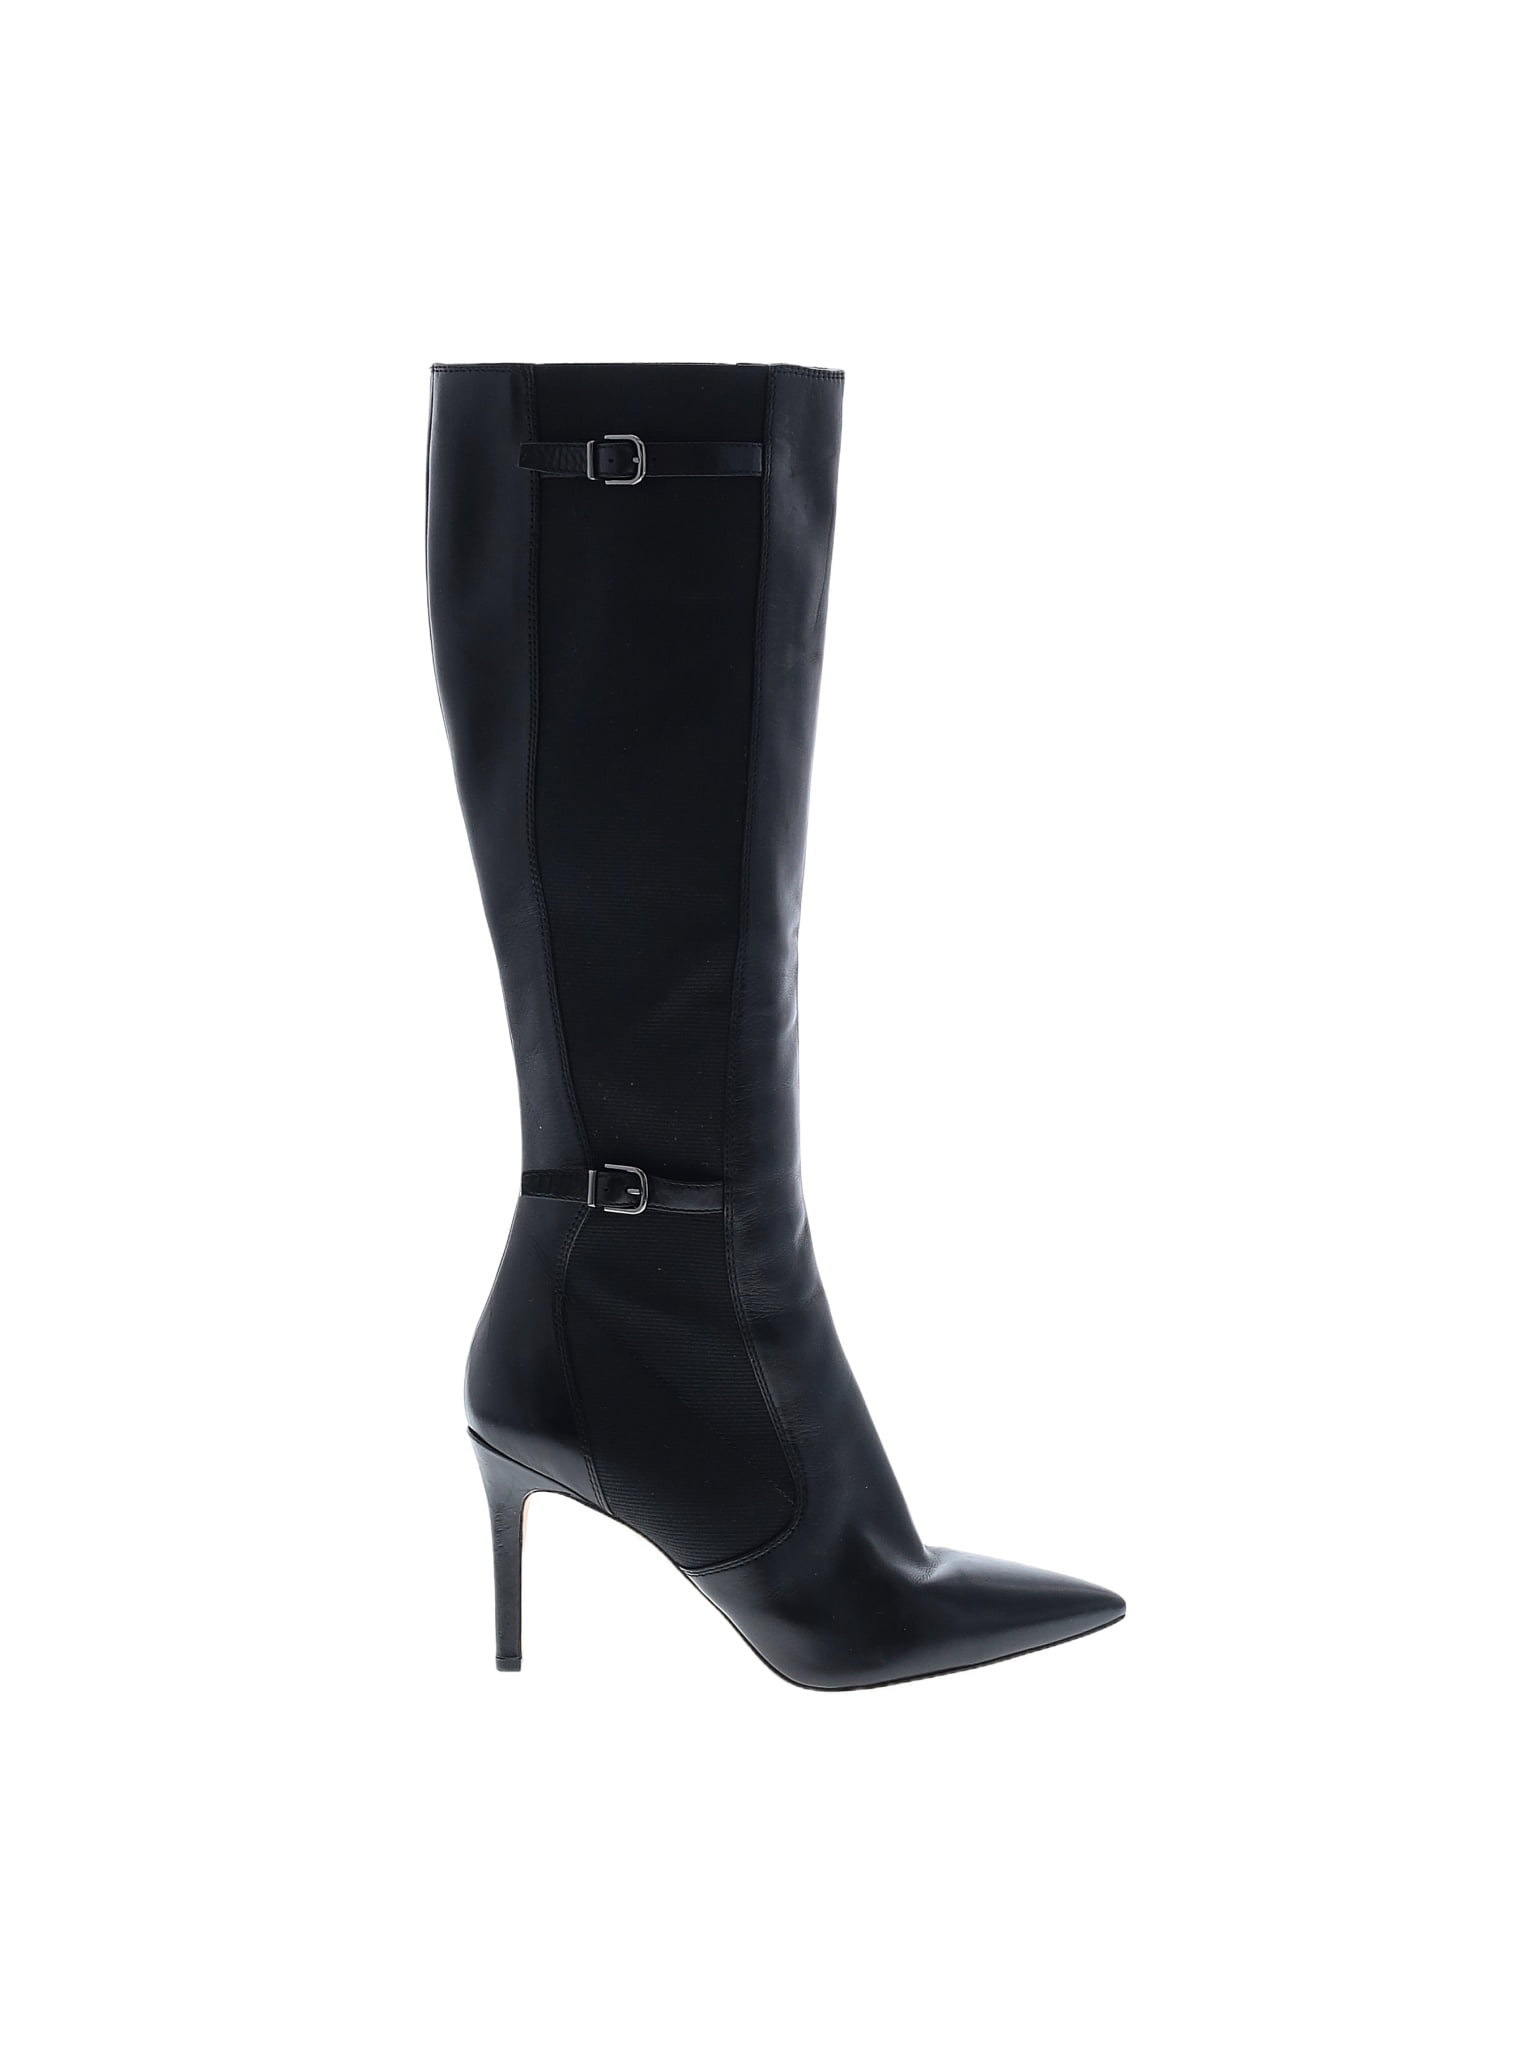 Via Spiga Solid Black Boots Size 9 - 65% off | thredUP